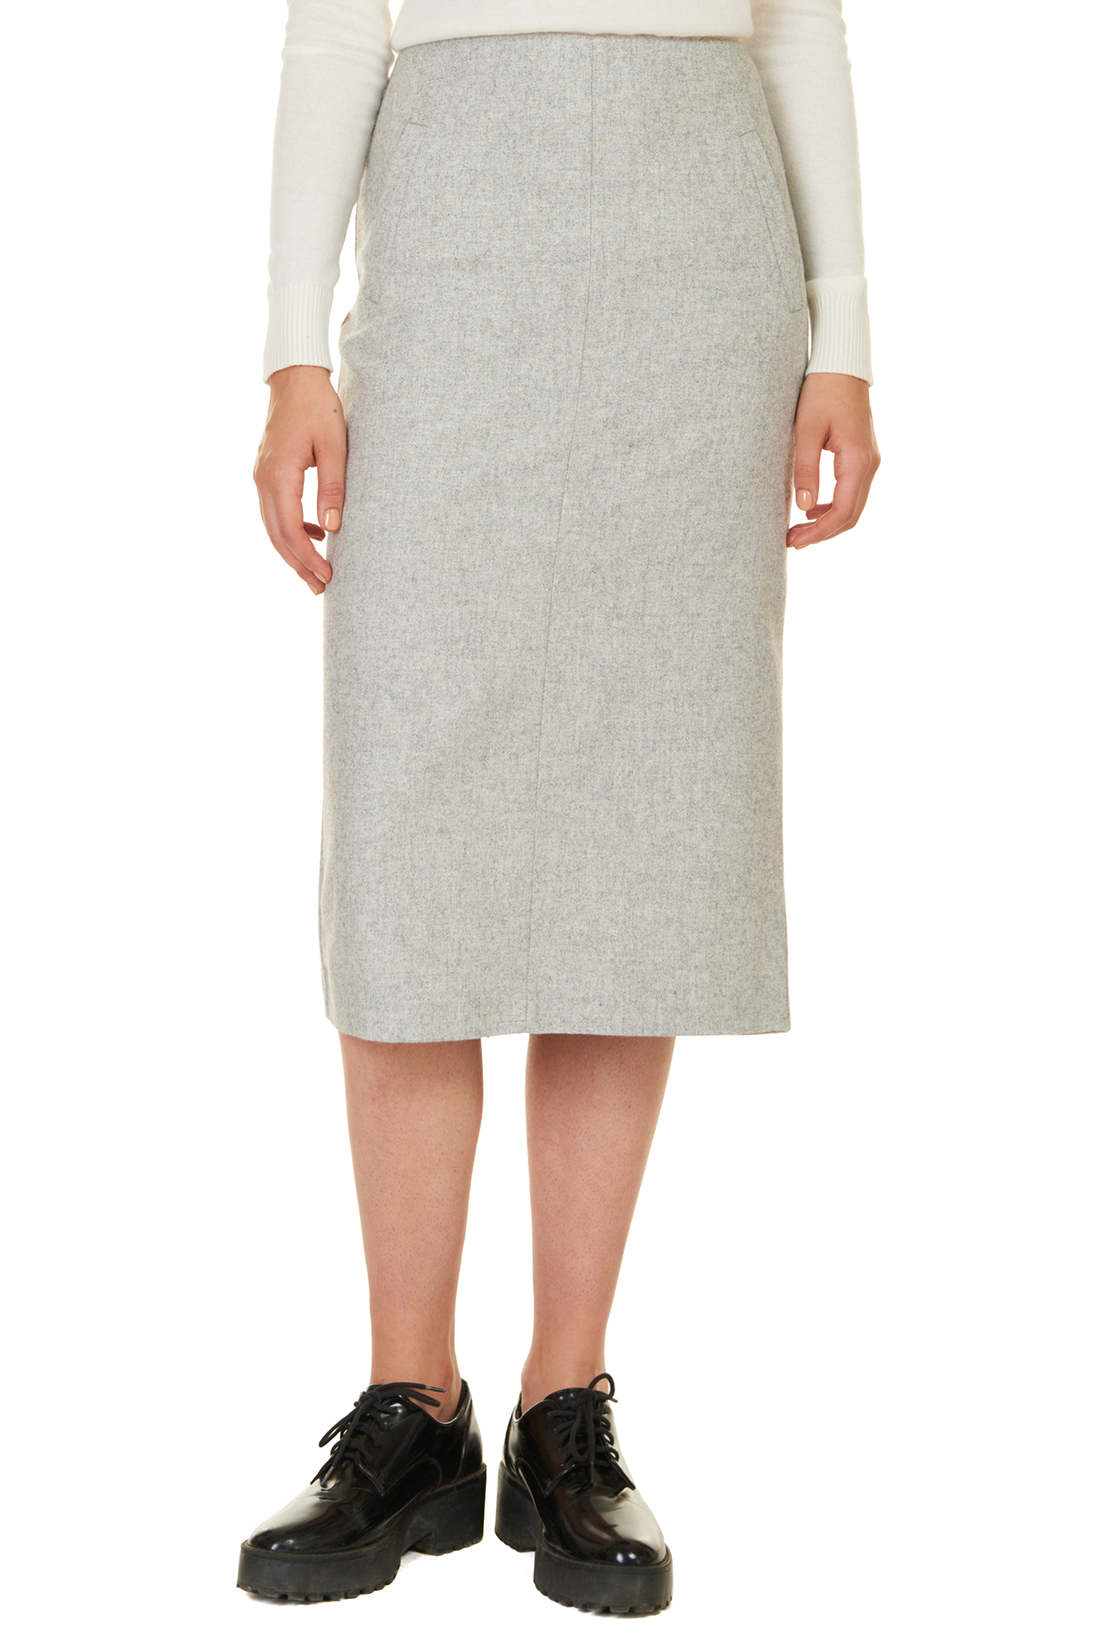 Прямая юбка с шерстью (арт. baon B477522), размер S, цвет silver melange#серый Прямая юбка с шерстью (арт. baon B477522) - фото 5